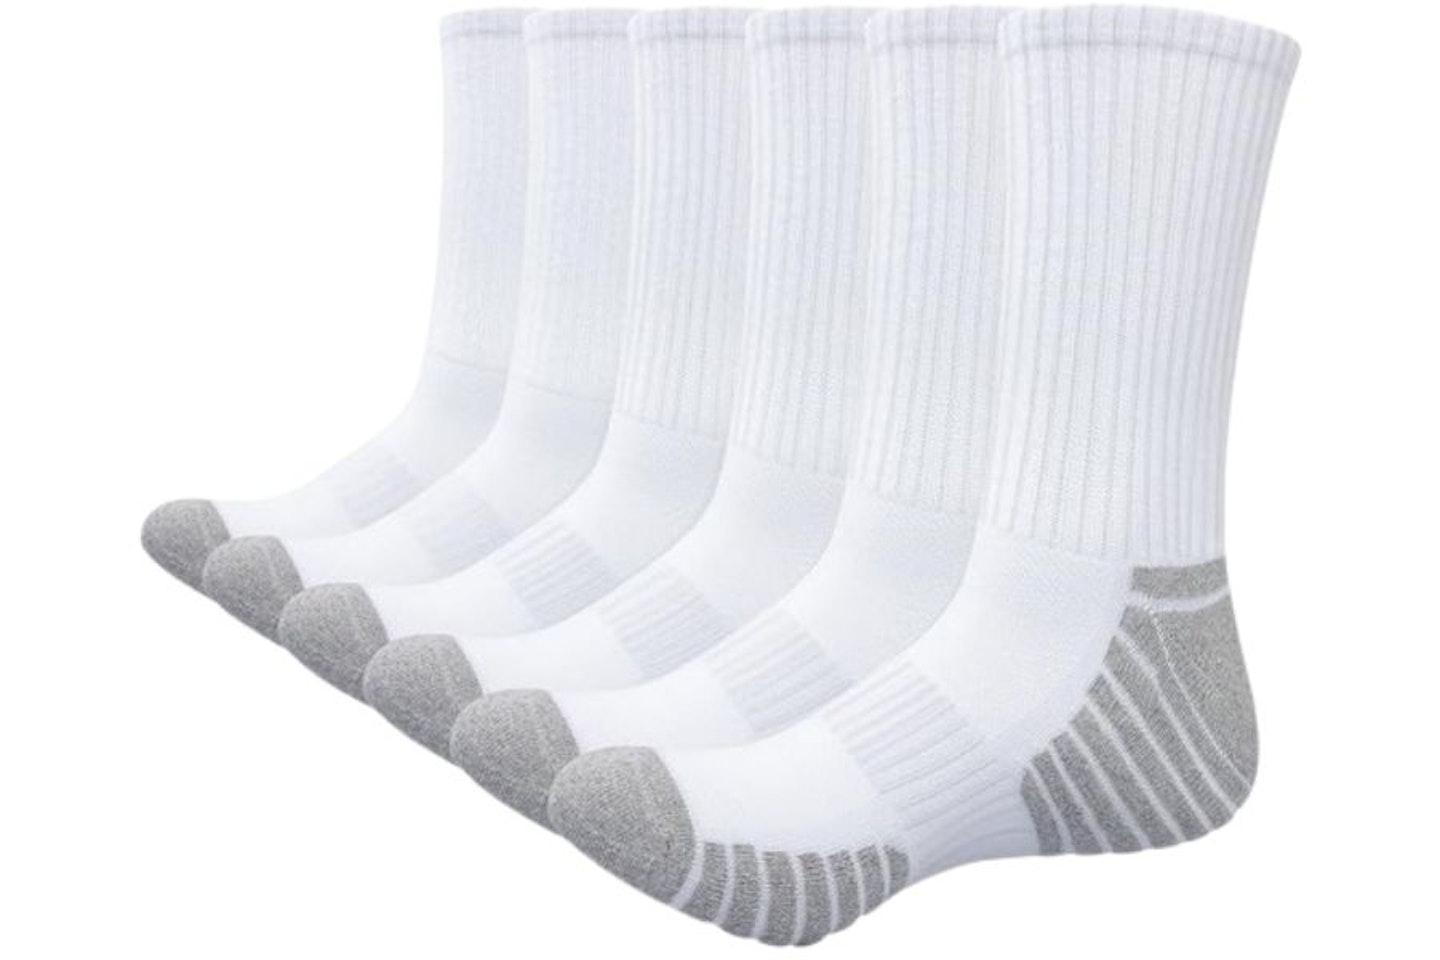 Alaplus Socks